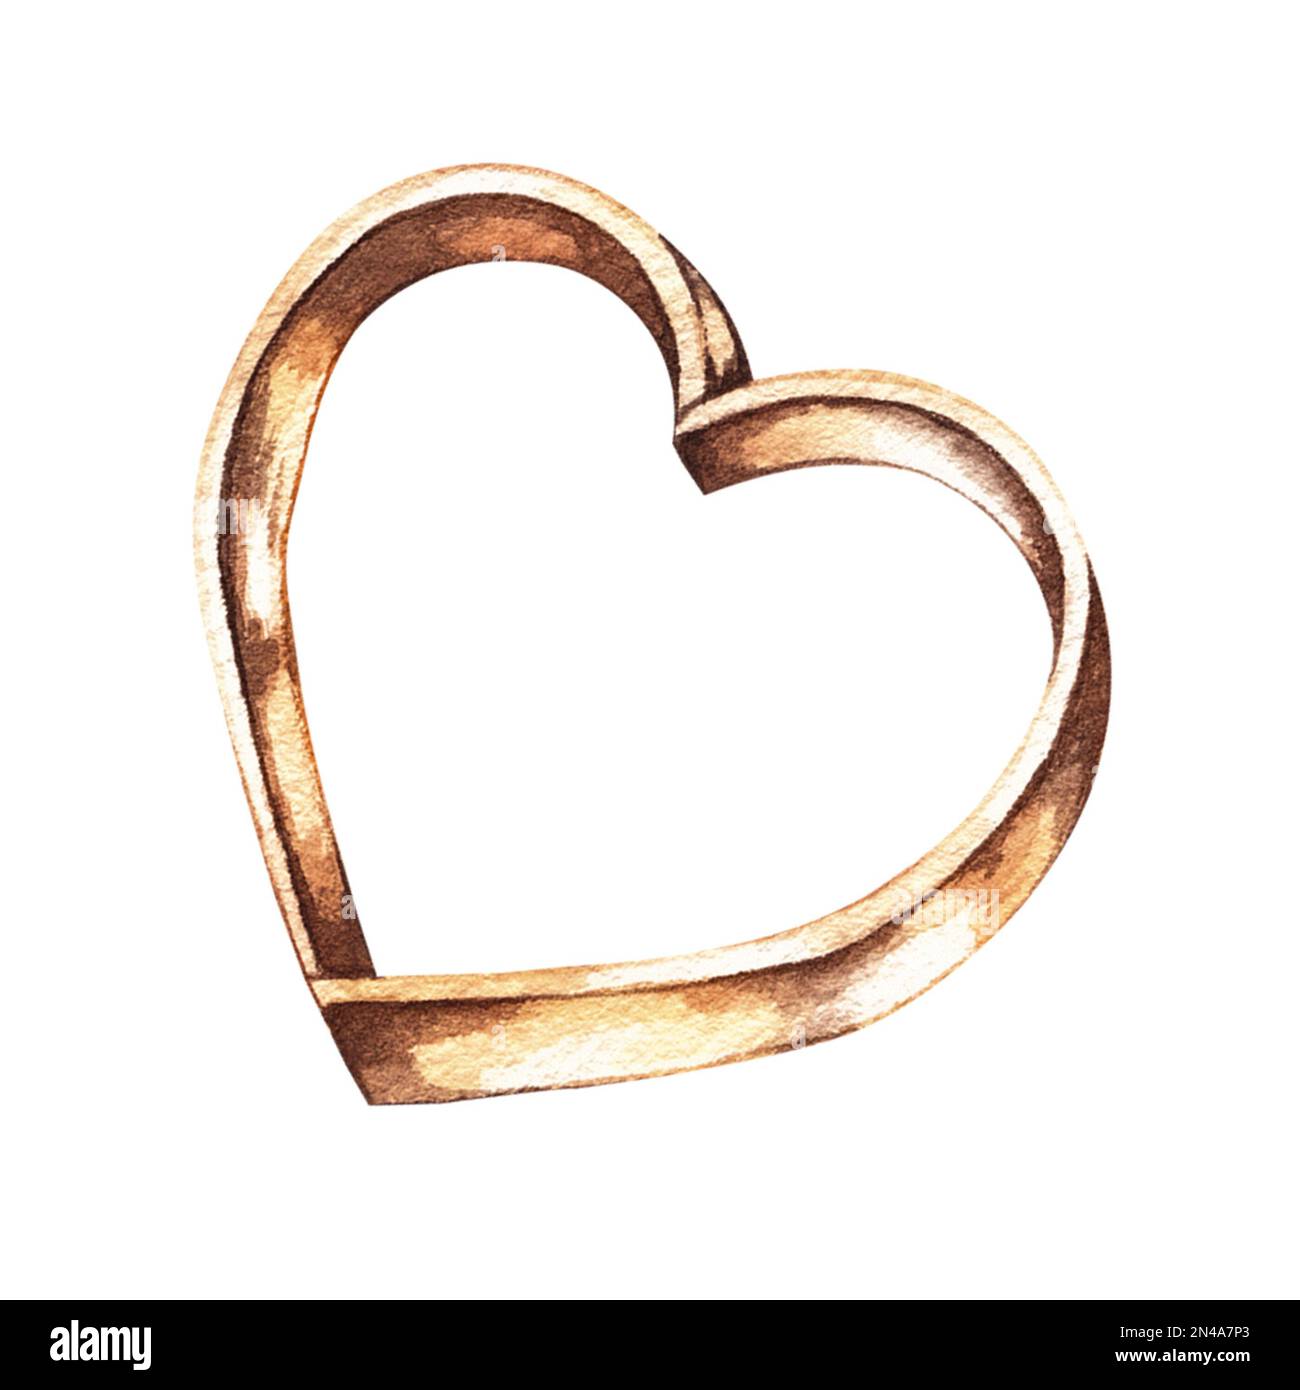 Plat de cuisson en cuivre aquarelle en forme de coeur sur fond blanc. Aquarelle pour logo, cartes de visite, réseaux sociaux, menus, bannières, advertis Banque D'Images